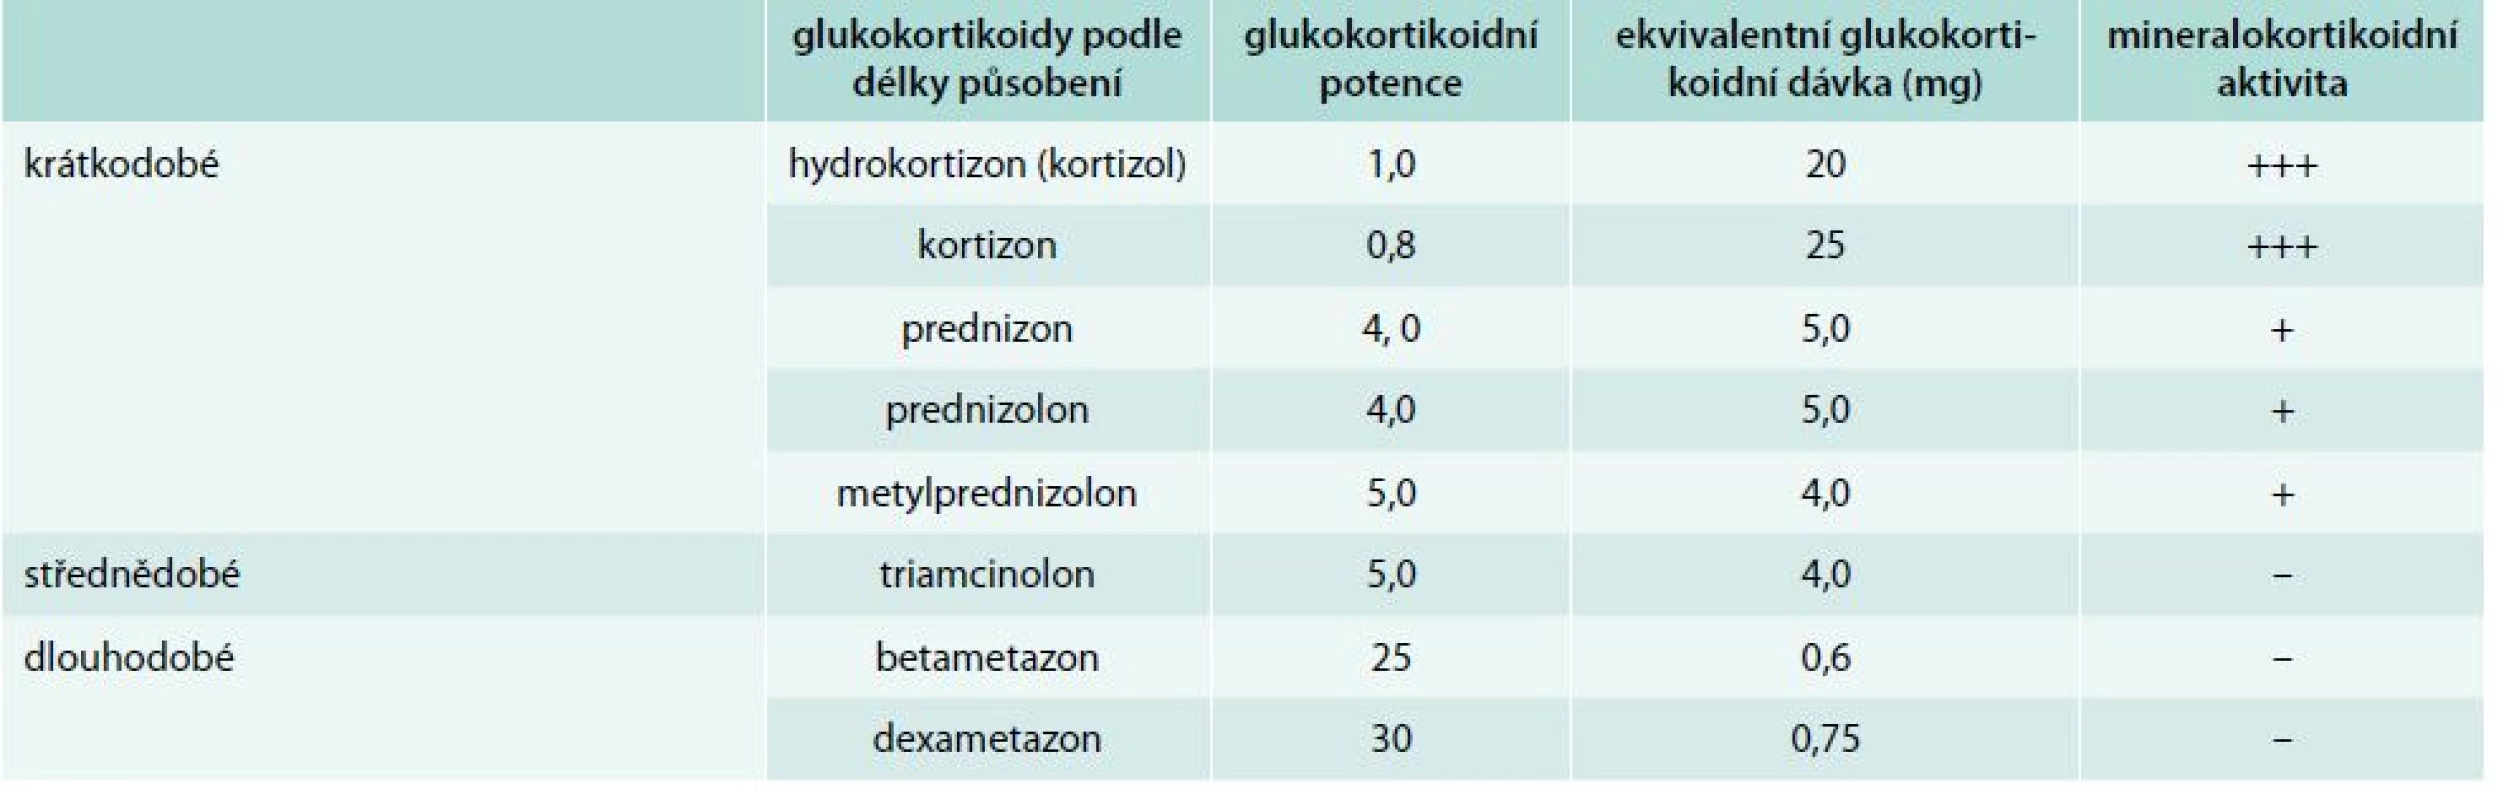 Rozdělení glukokortikoidů podle délky působení a podle glukokortikoidní a mineralokortikoidní účinnosti. Upraveno podle [10–13]